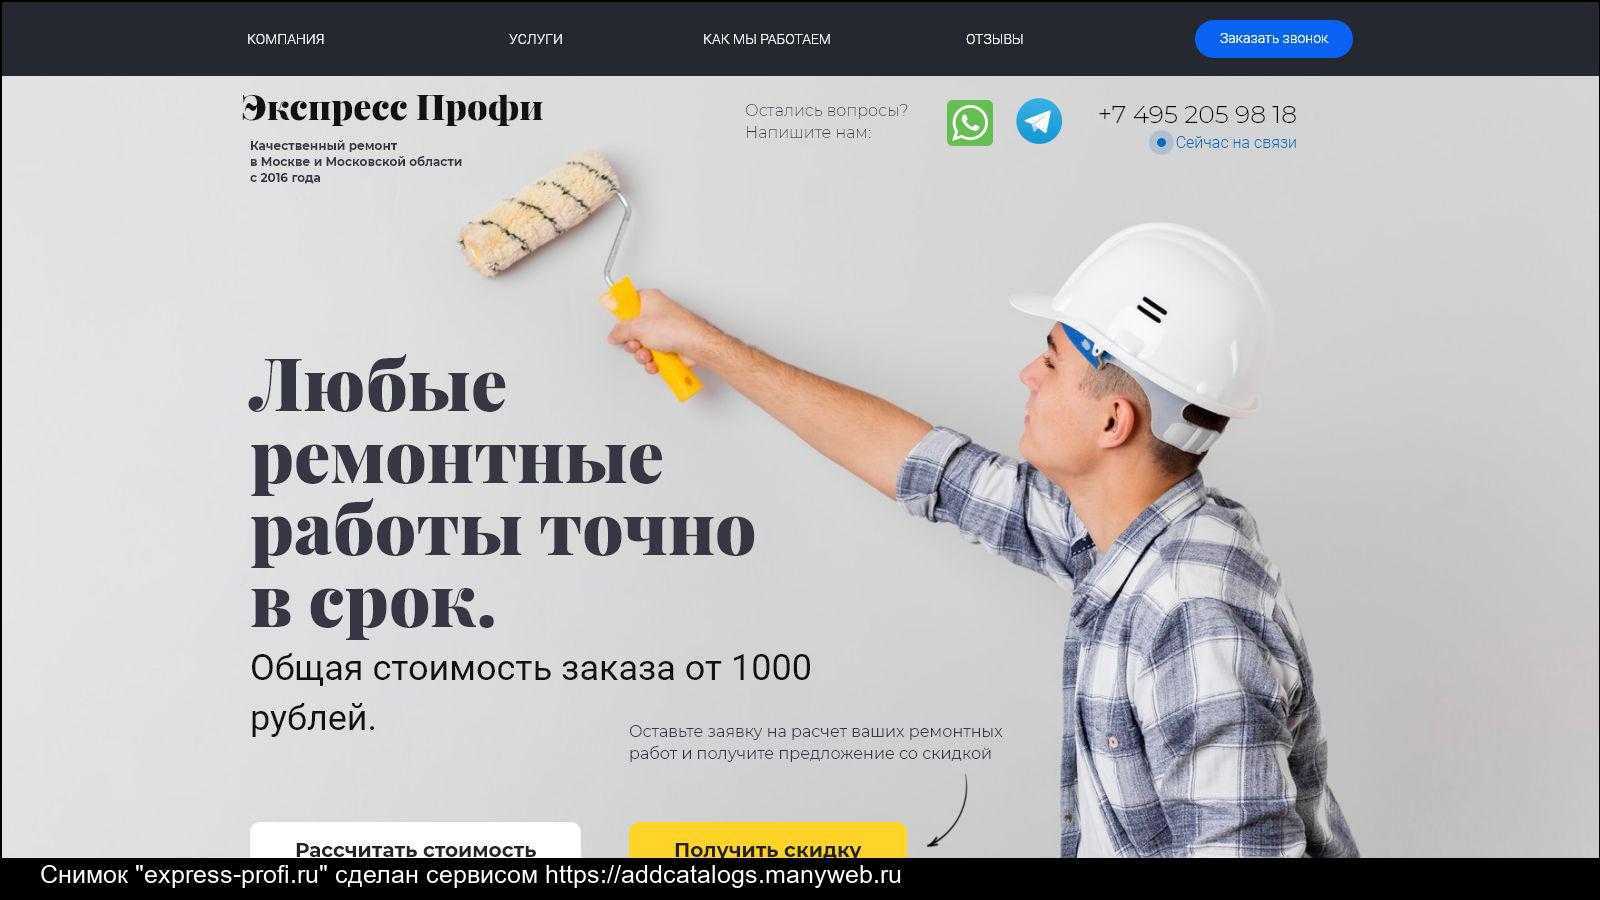 Как можно заработать плиточнику на сайте profi.ru, отзывы